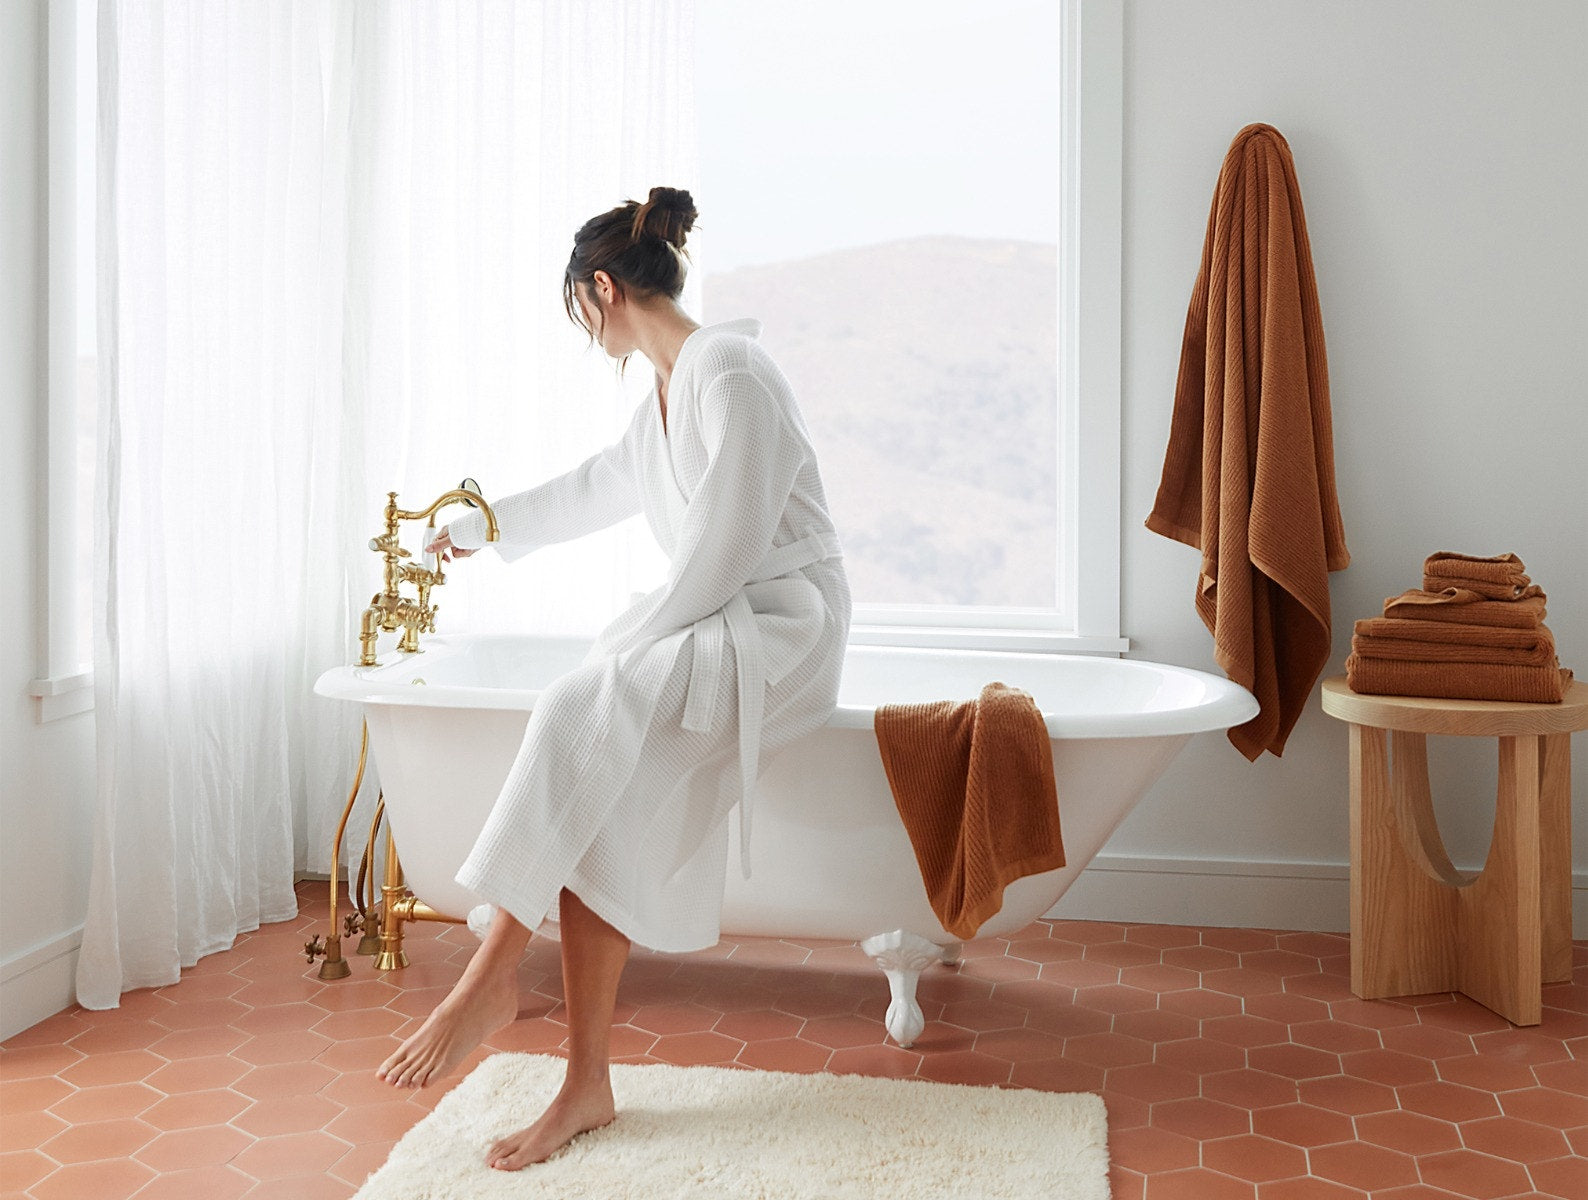 Temescal Terra Organic Bath Towels by Coyuchi